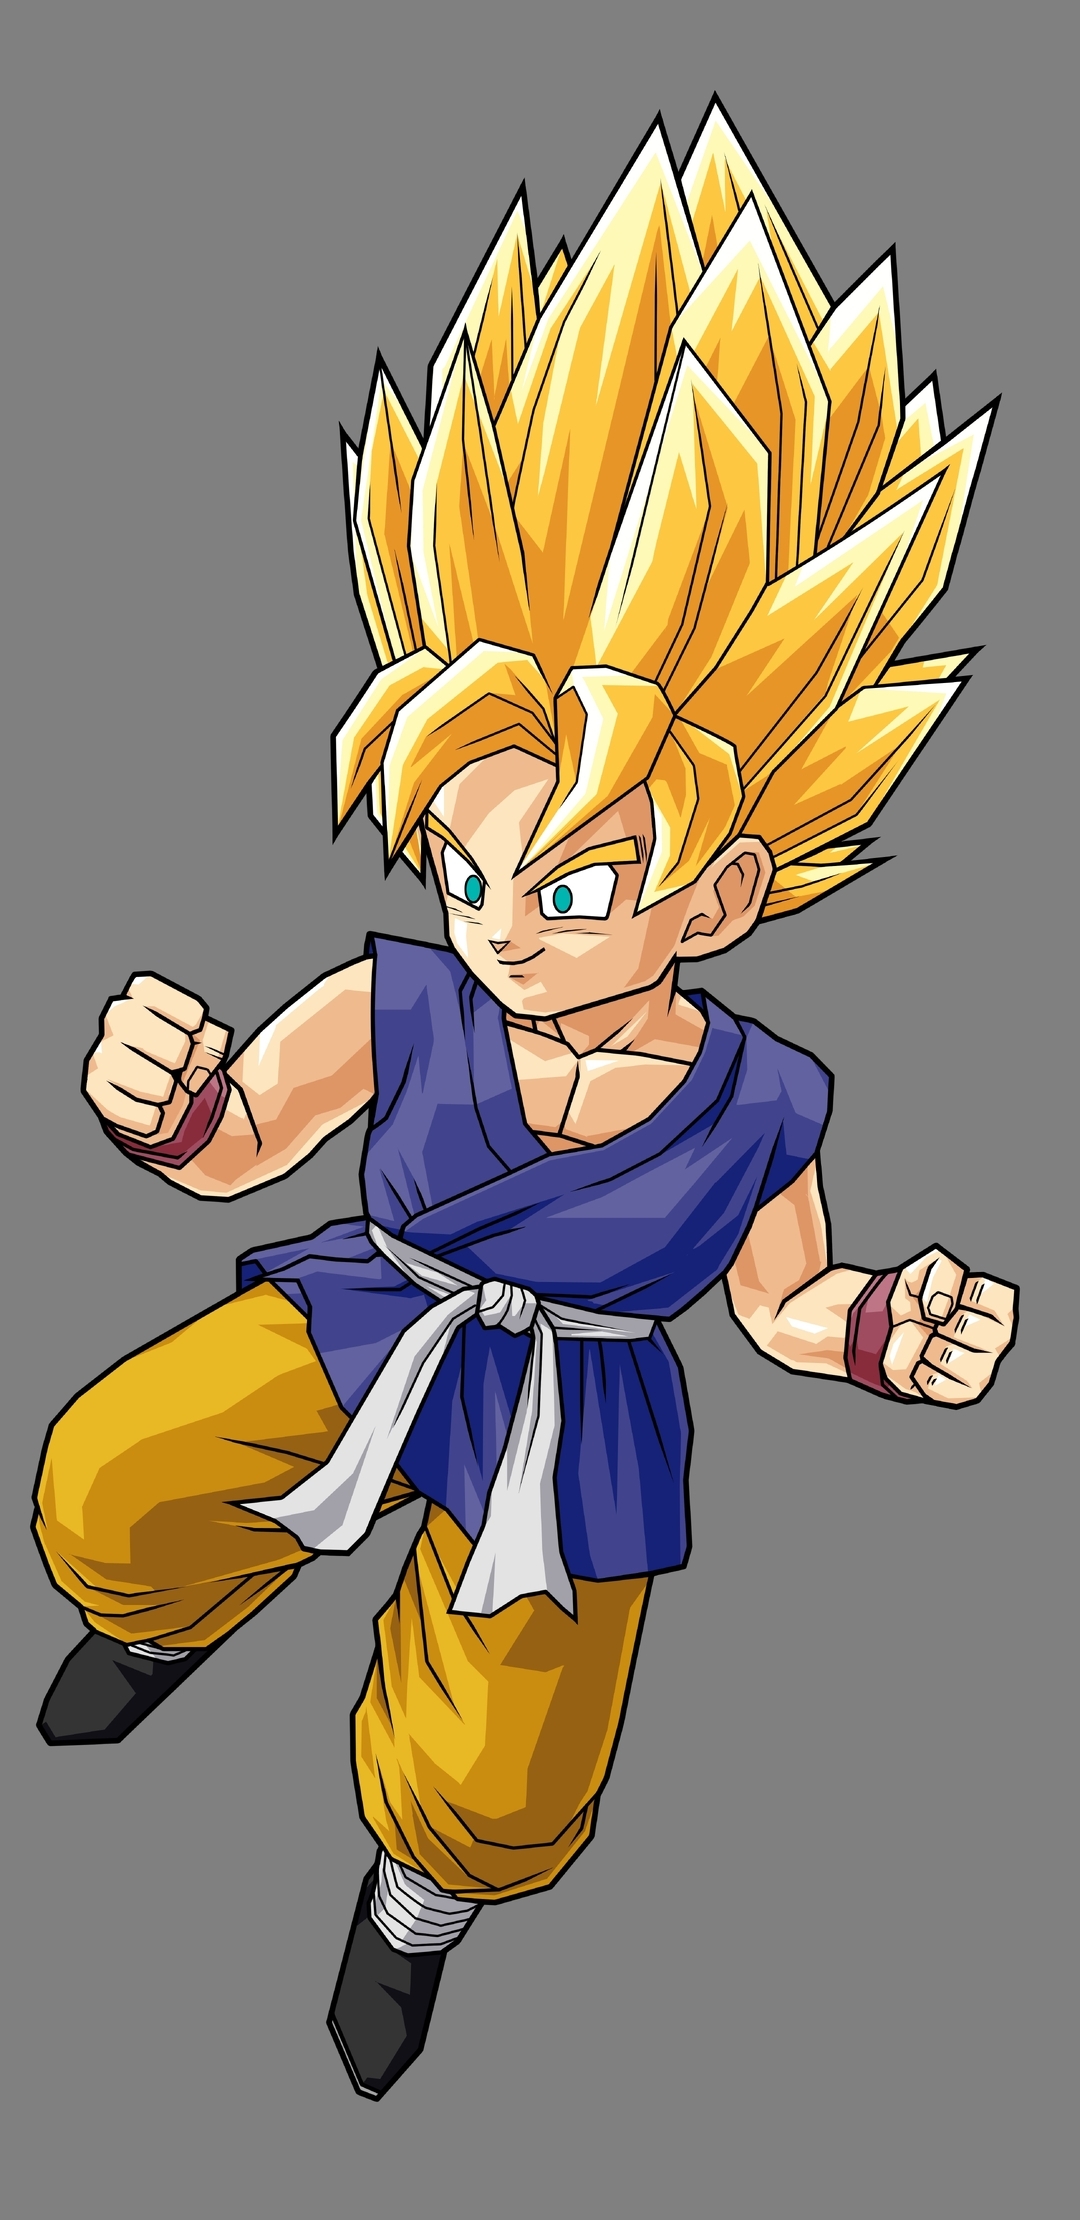 Image: Son Goku, Dragon Ball, gray background, Super Saiyan, Kakarotto